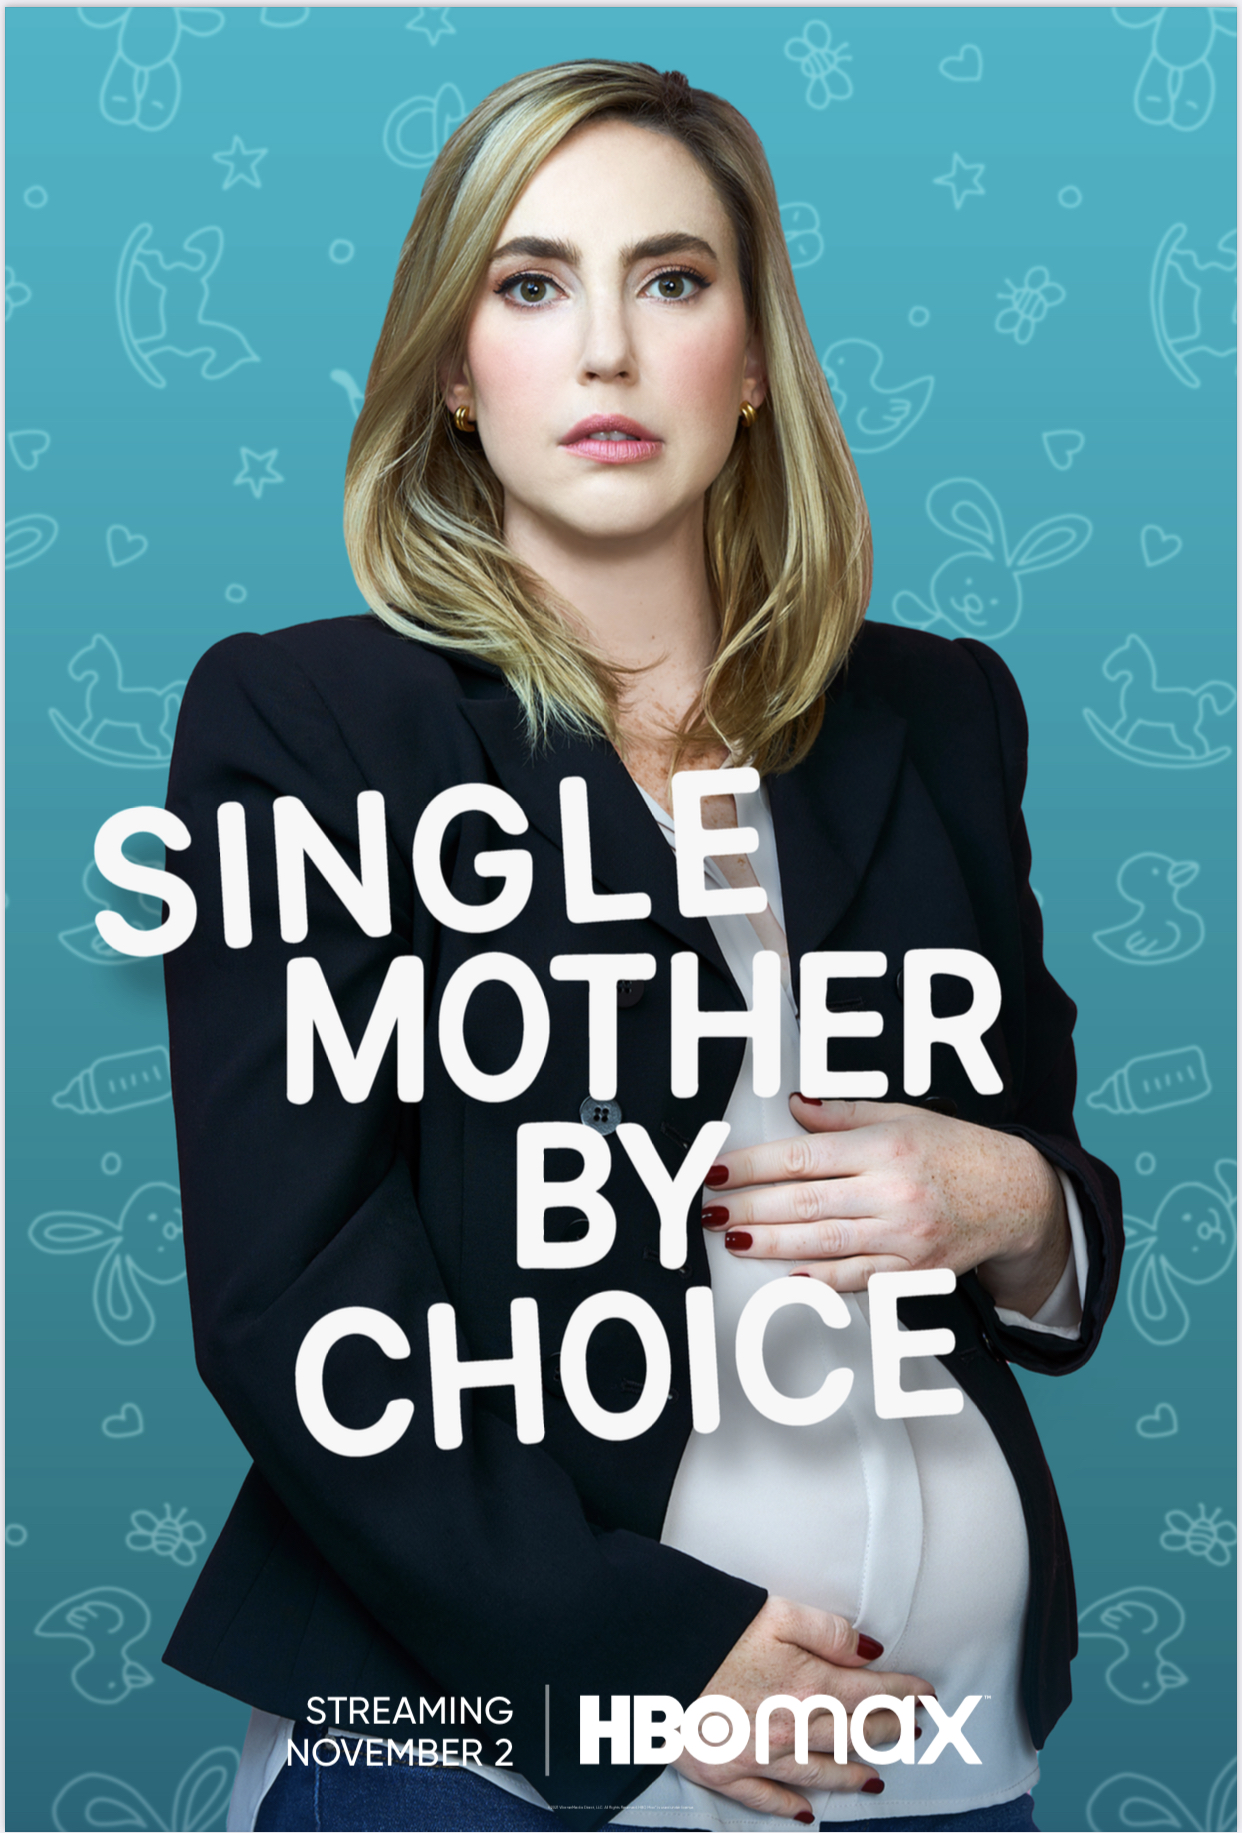 ดูหนังออนไลน์ฟรี Single Mother by Choice (2021) ซิง เกิล มา’เธอะ บอย ชอยซฺ